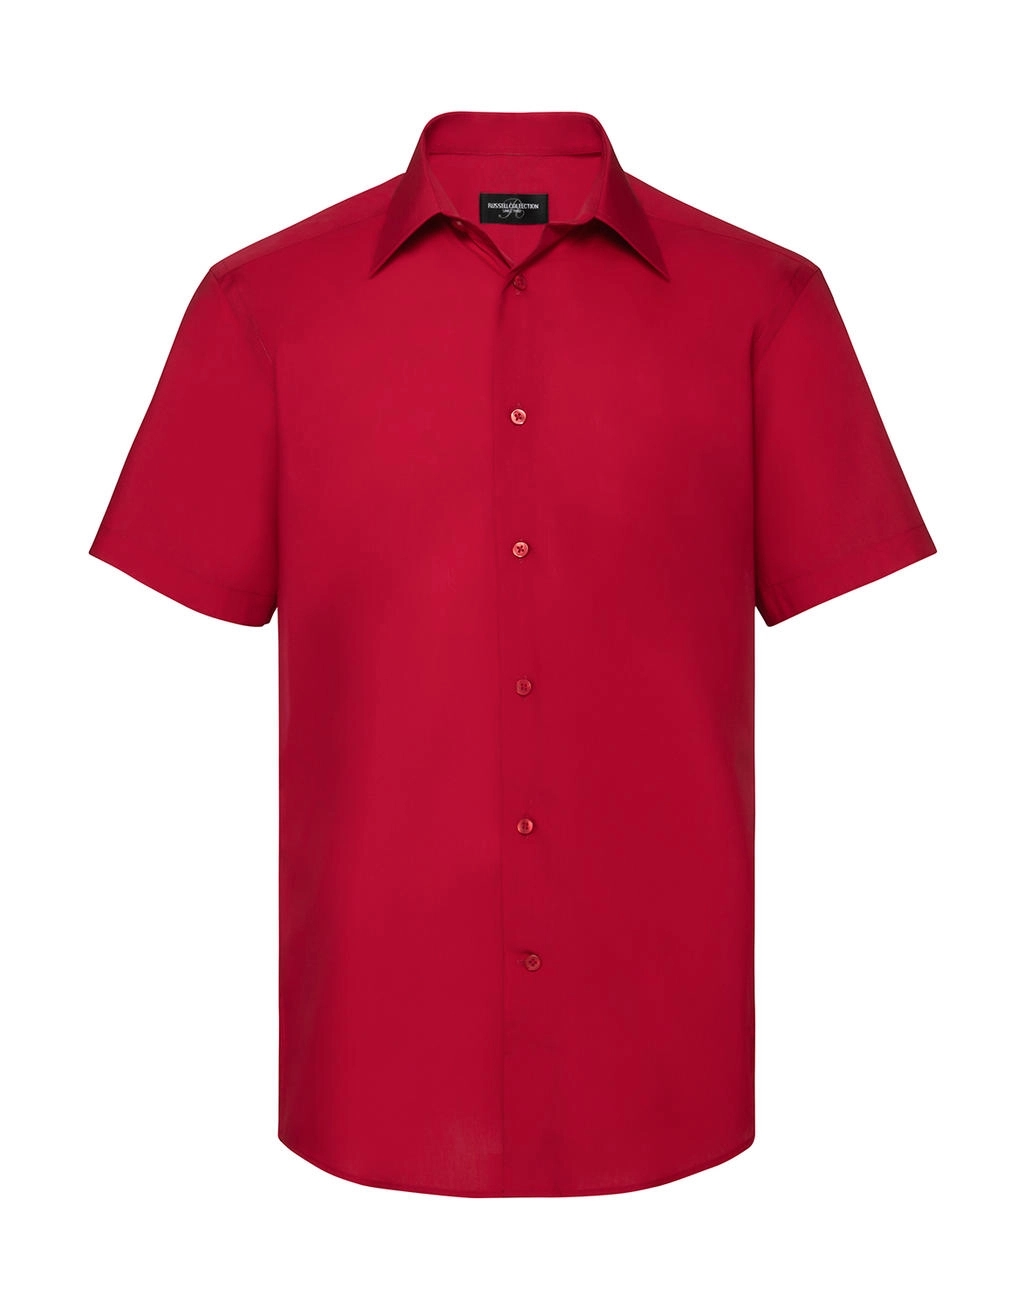 Tailored Poplin Shirt zum Besticken und Bedrucken in der Farbe Classic Red mit Ihren Logo, Schriftzug oder Motiv.